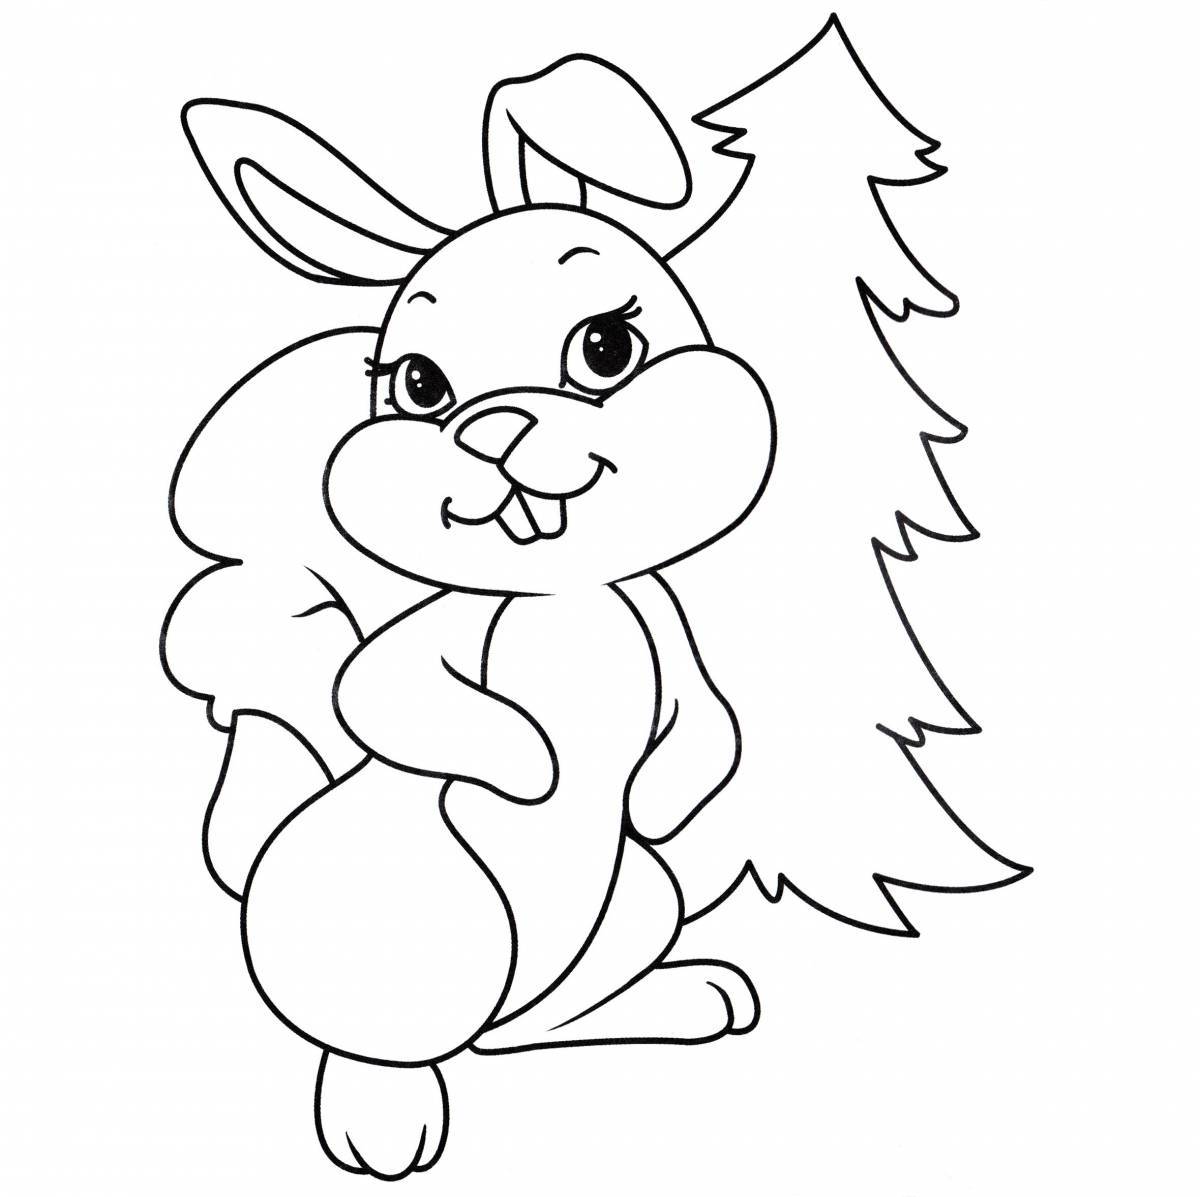 Rampant Christmas Bunny coloring page